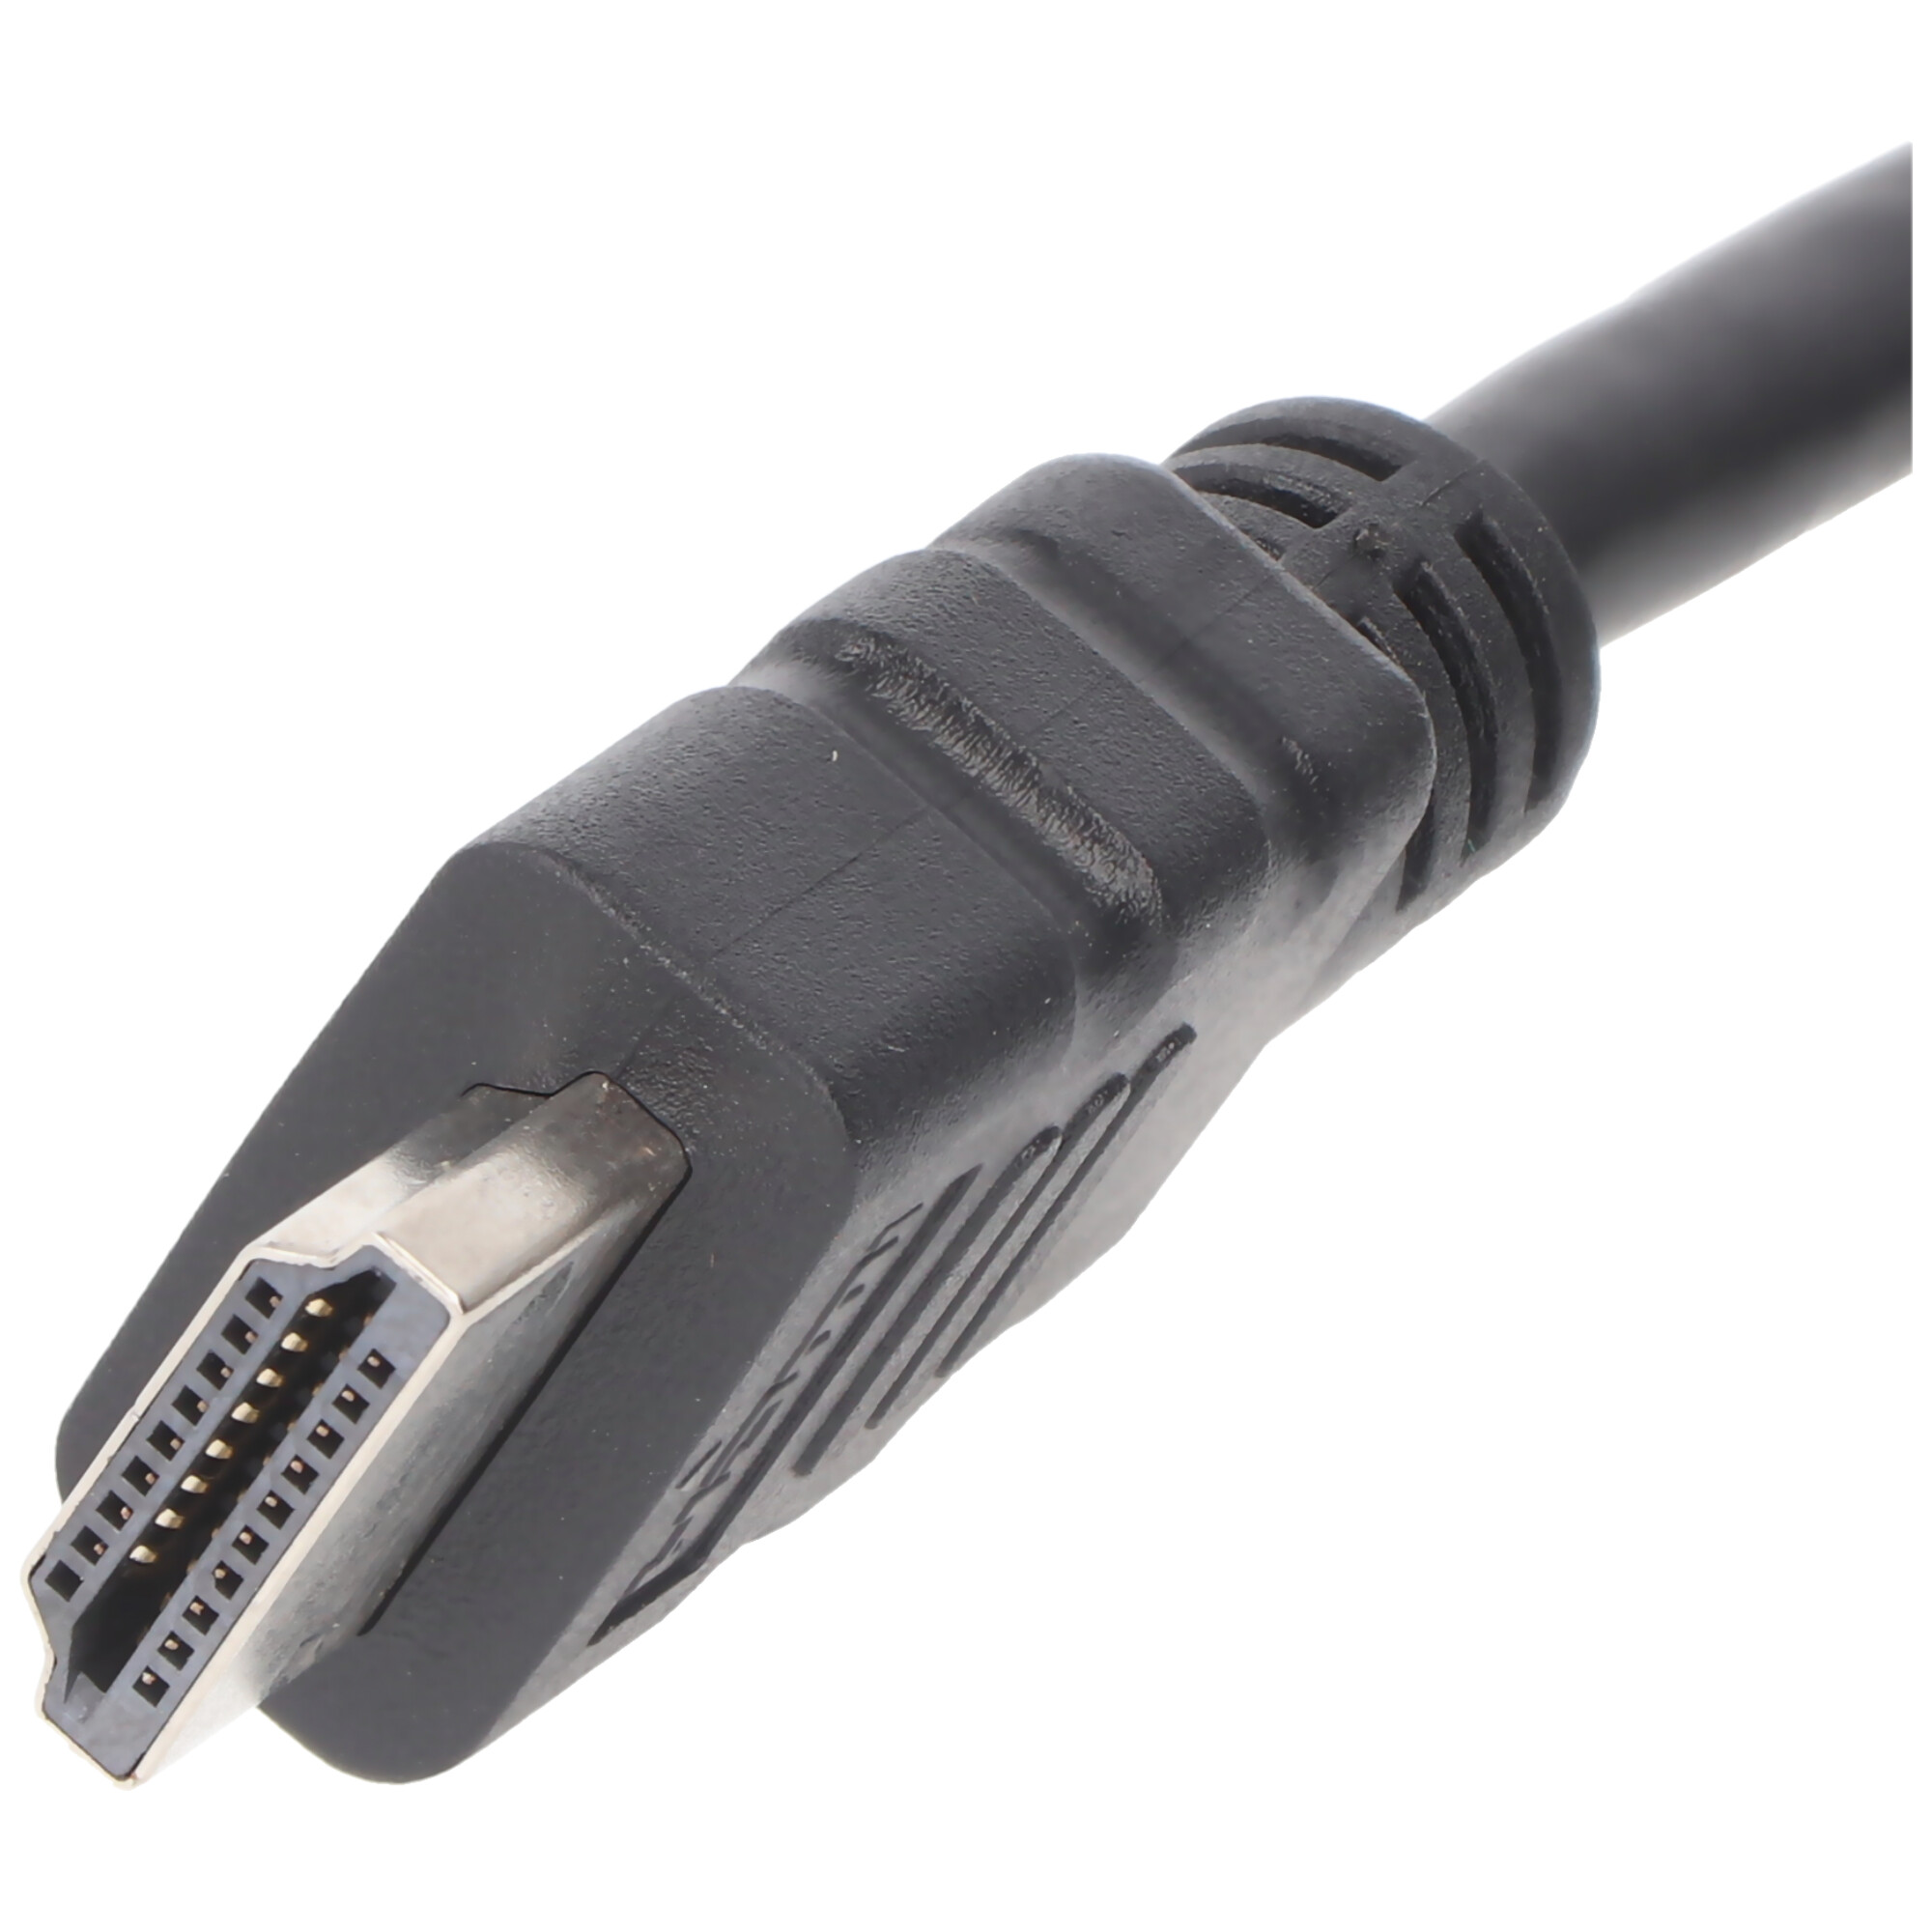 HDMI Kabel mit DVI-D Stecker Kabellänge 1 Meter